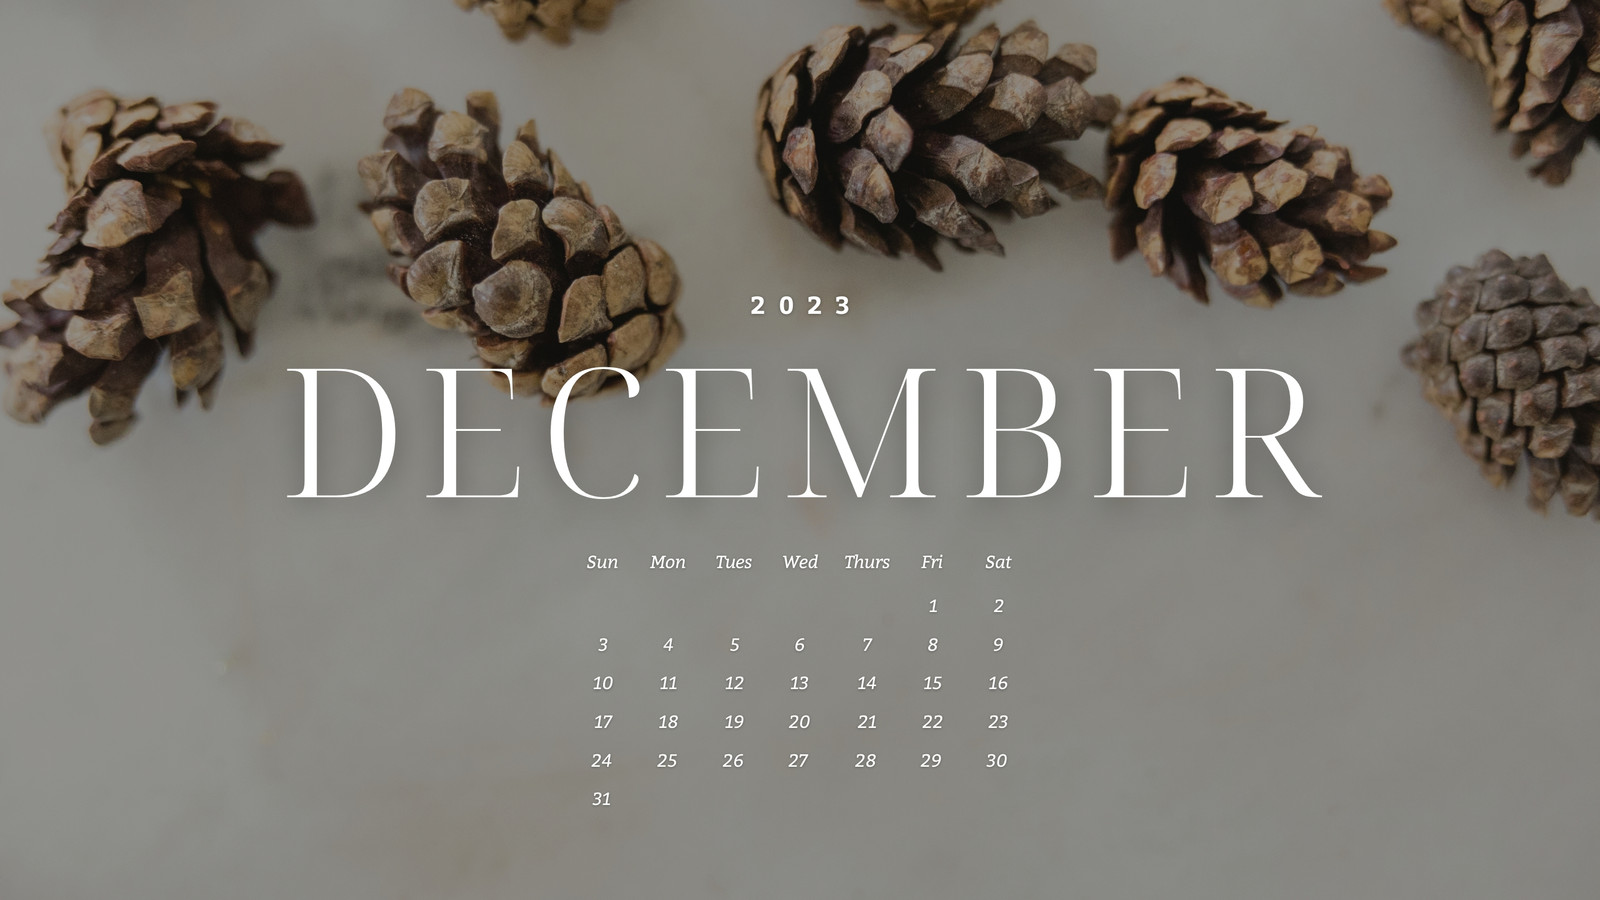 December 2023 Calendar Wallpapers Top Free December 2023 Calendar